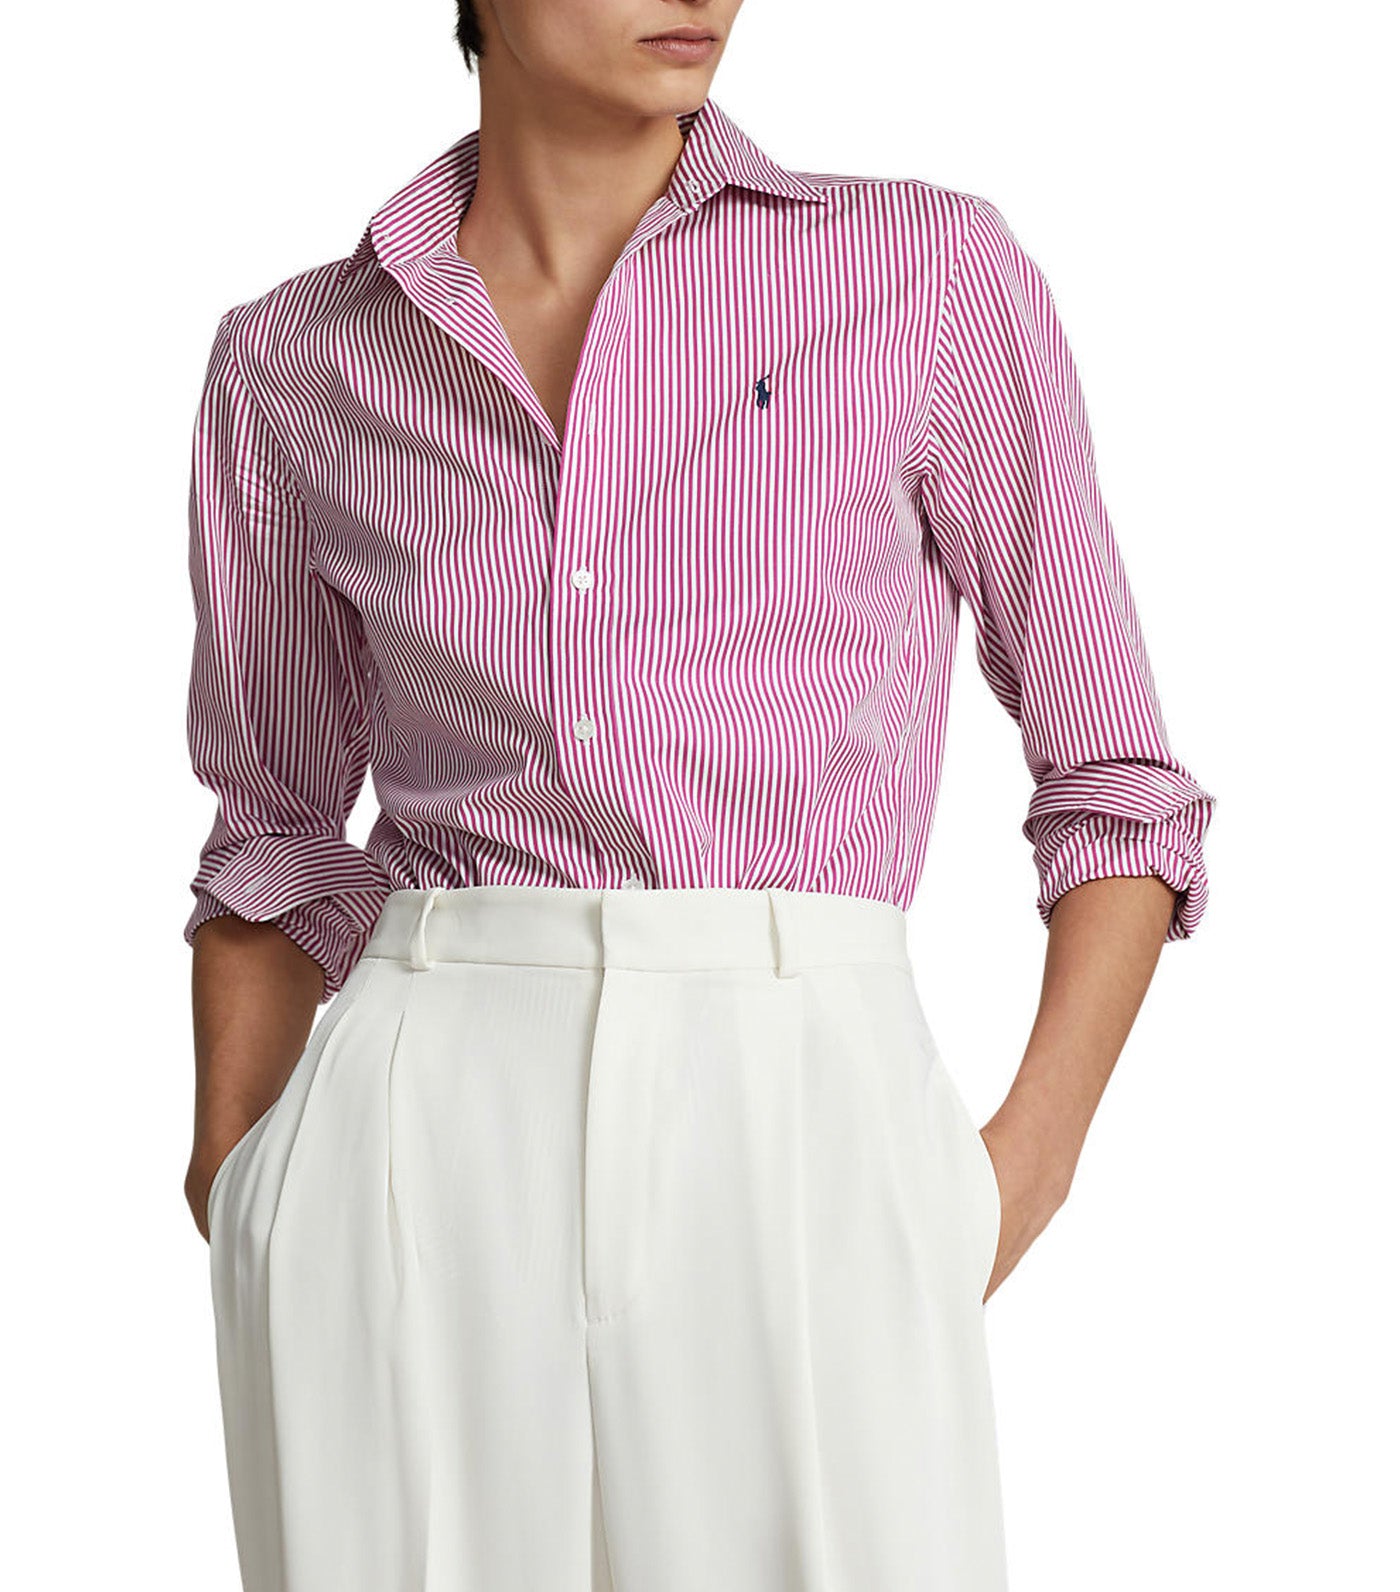 Women's Striped Cotton Shirt White/Vivid Pink